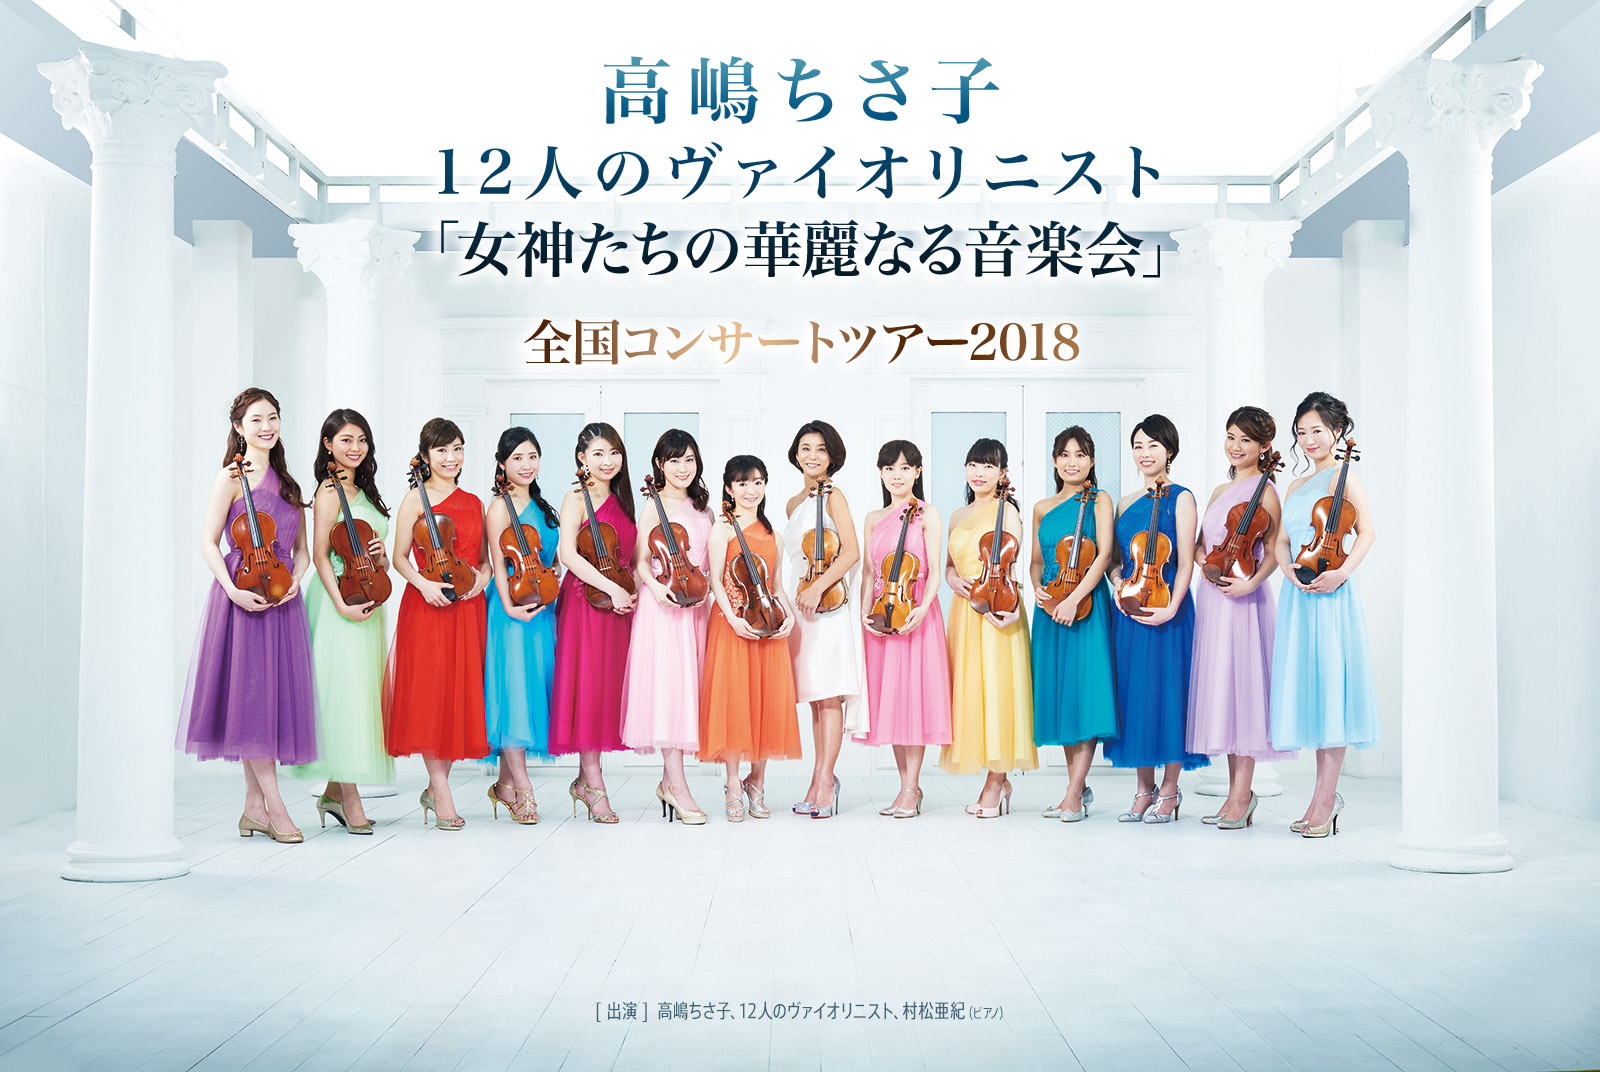 高嶋ちさ子 12人のヴァイオリニスト「女神たちの華麗なる音楽会」